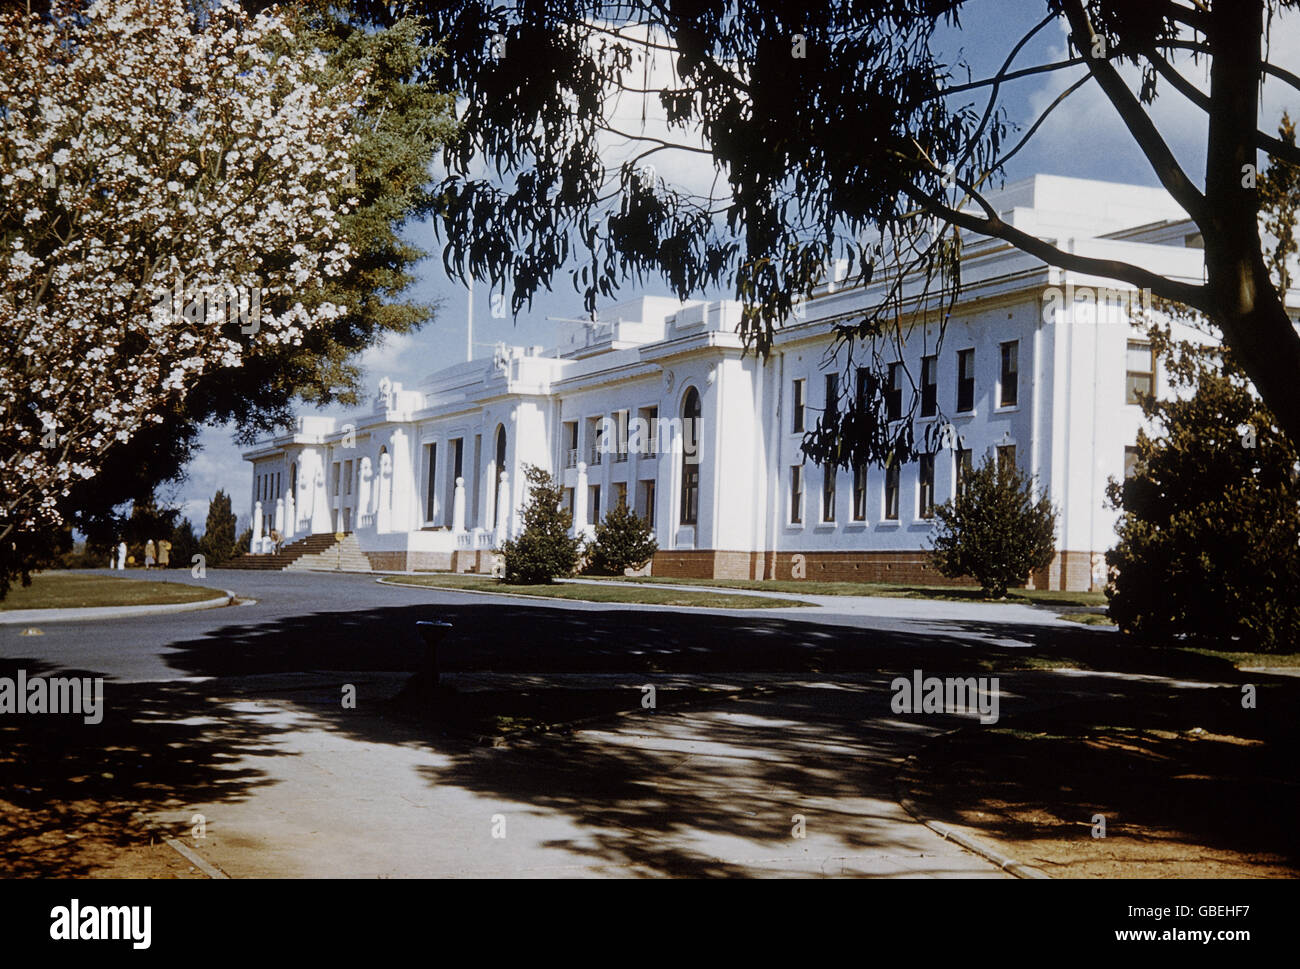 Géographie / voyage, Australie, Nouvelle-Galles du Sud, Canberra, Parlement, 1963, droits supplémentaires-Clearences-non disponible Banque D'Images